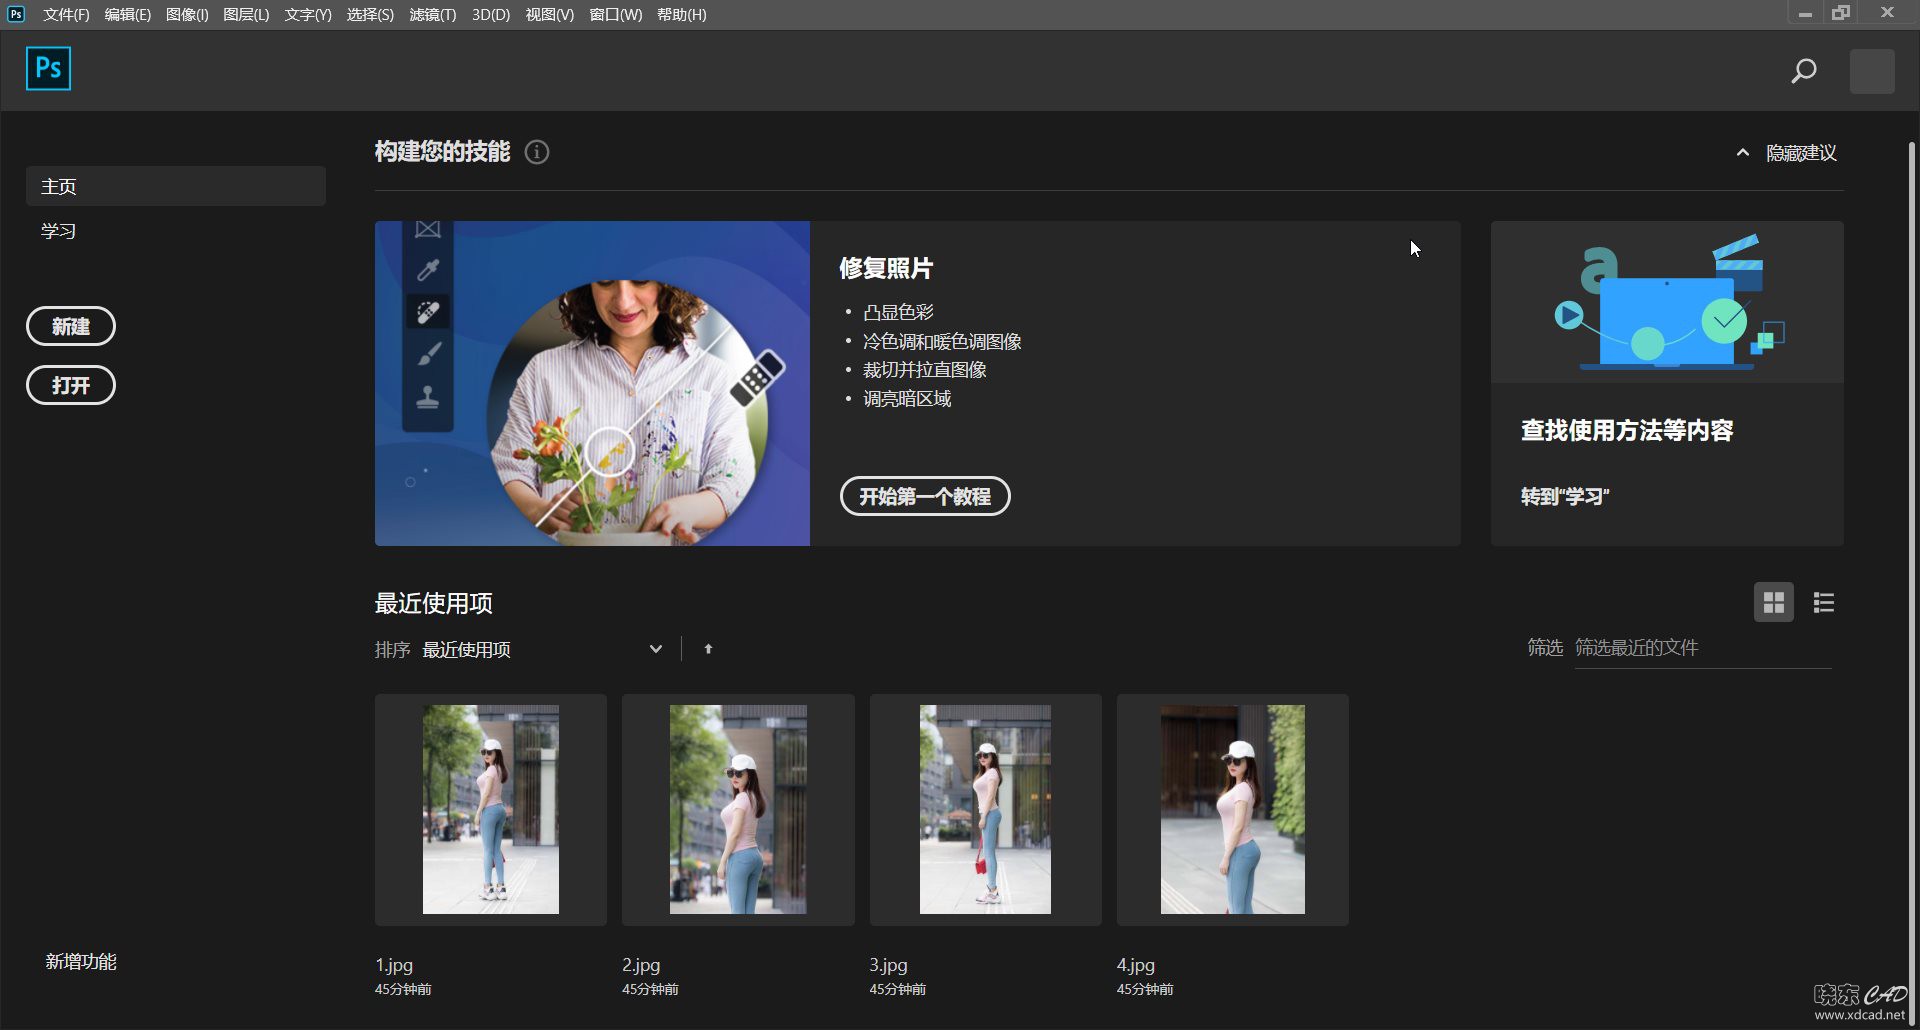 Adobe photoshop cc 2020直装版 V21.1.1 简体中文破解版-1.jpg